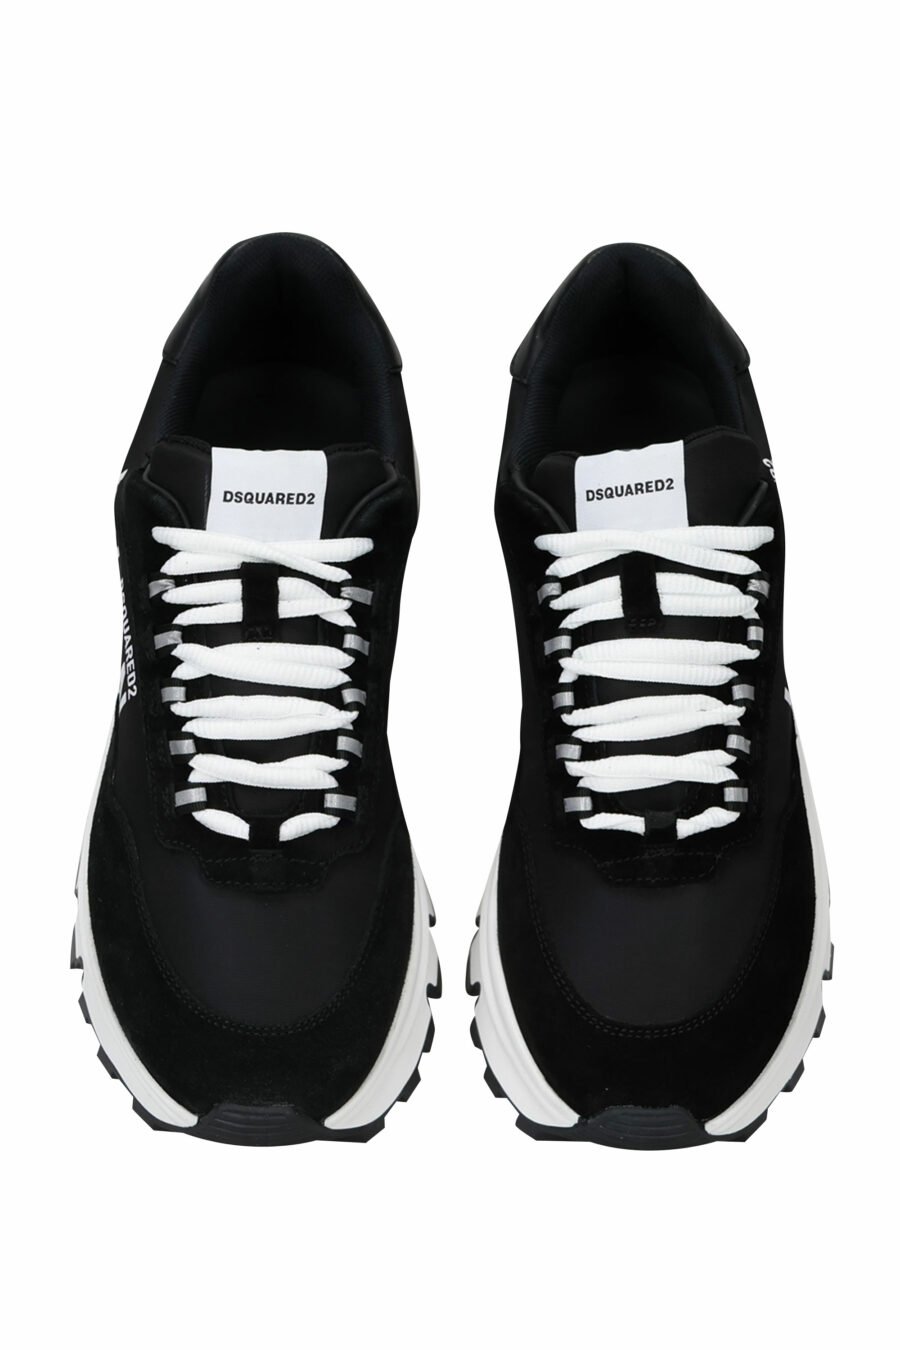 Sapatos pretos com mini-logotipo "icon" e sola branca com tubo interior - 8055777249321 6